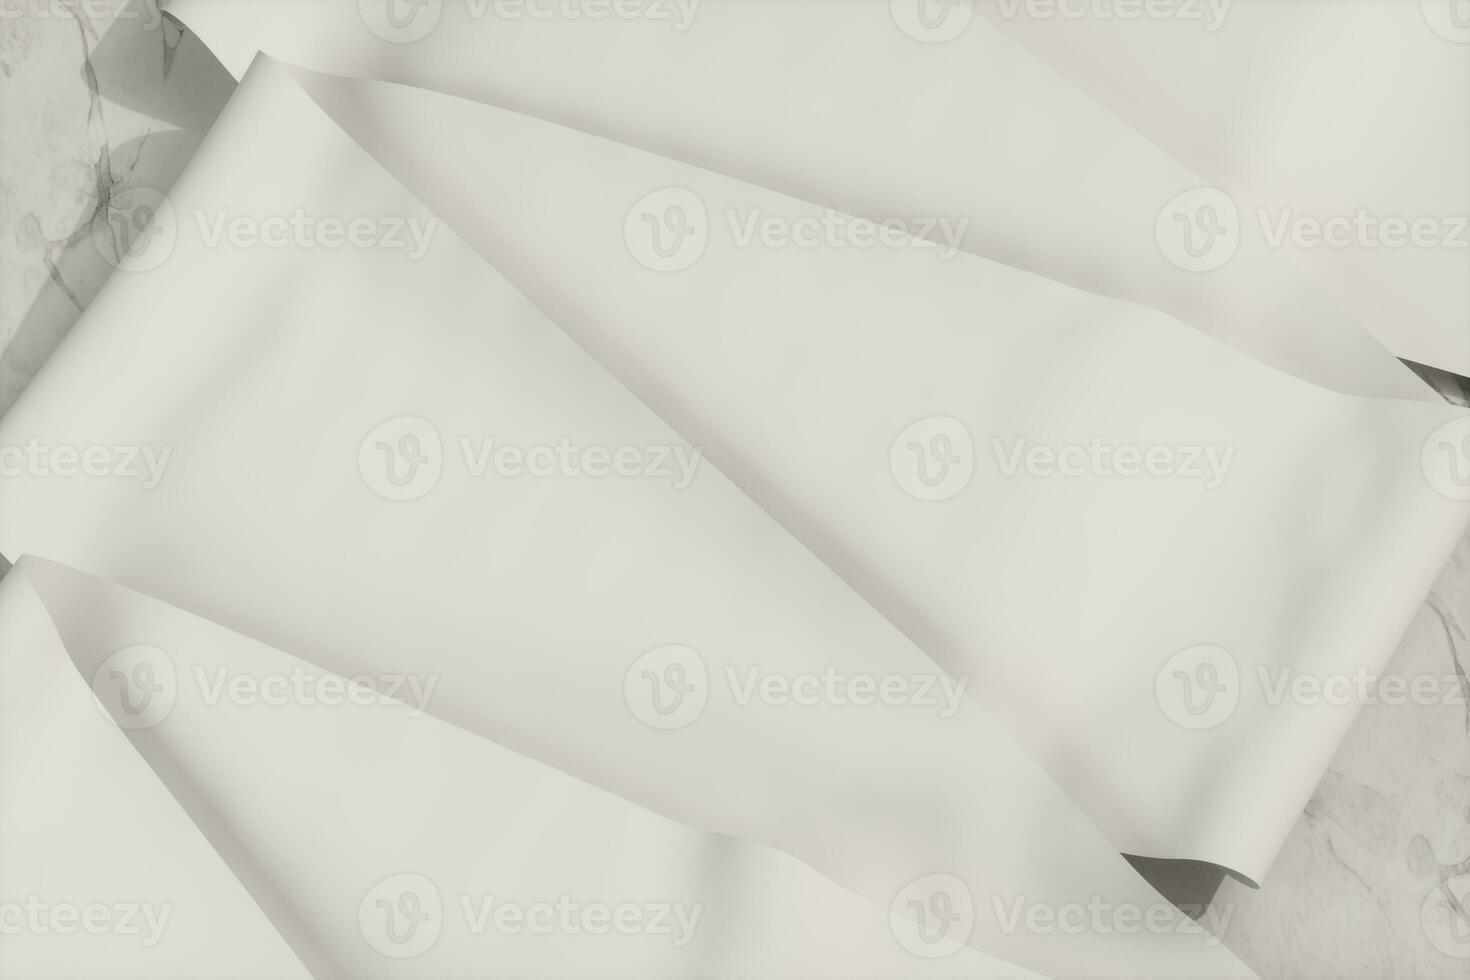 Vide rouleau de papier sur le marbre dalle, marbre arrière-plan, 3d le rendu, photo